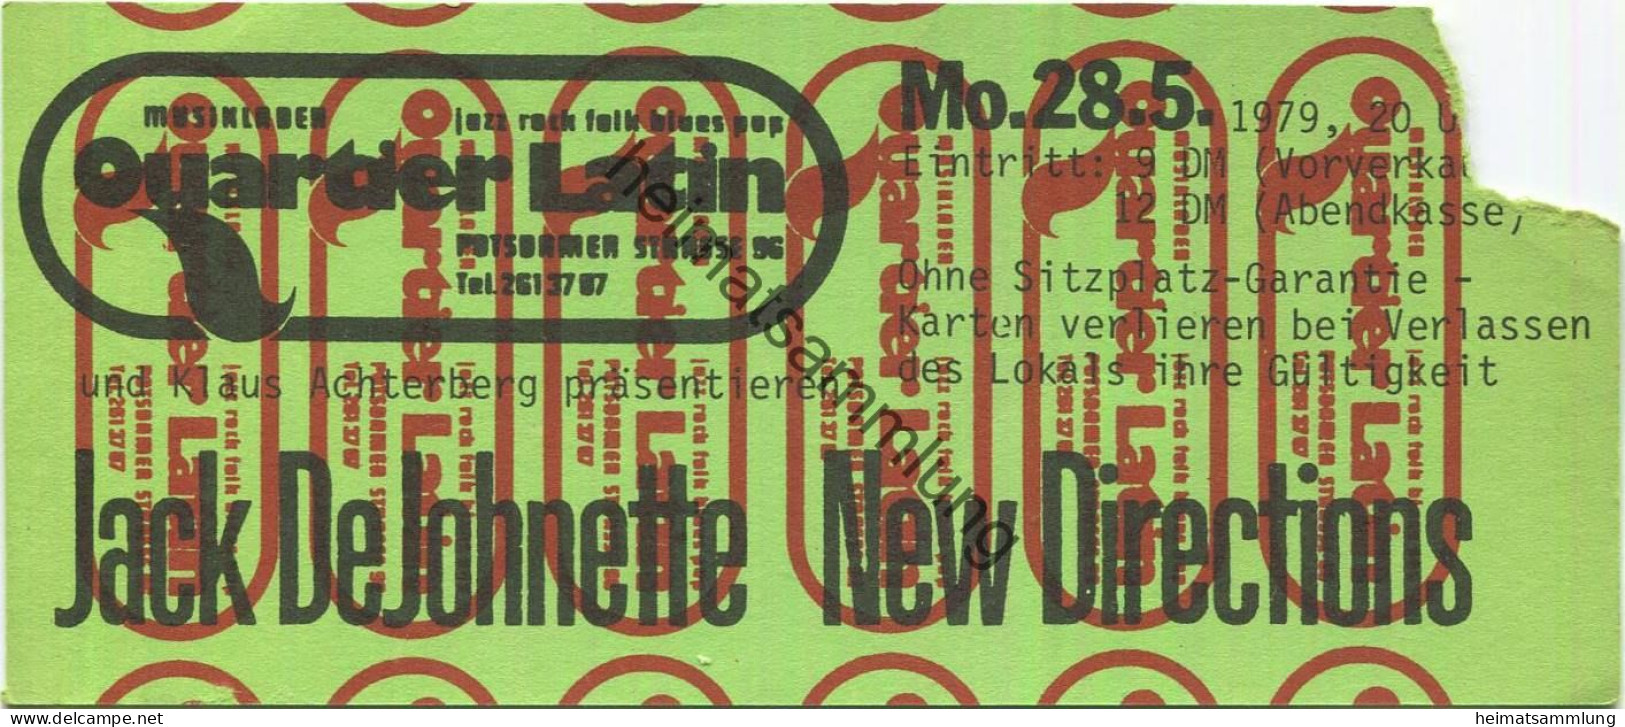 Deutschland - Berlin - Quartier Latin Und Klaus Achterberg - Jack De Johnette New Directions - Eintrittskarte 1979 - Eintrittskarten